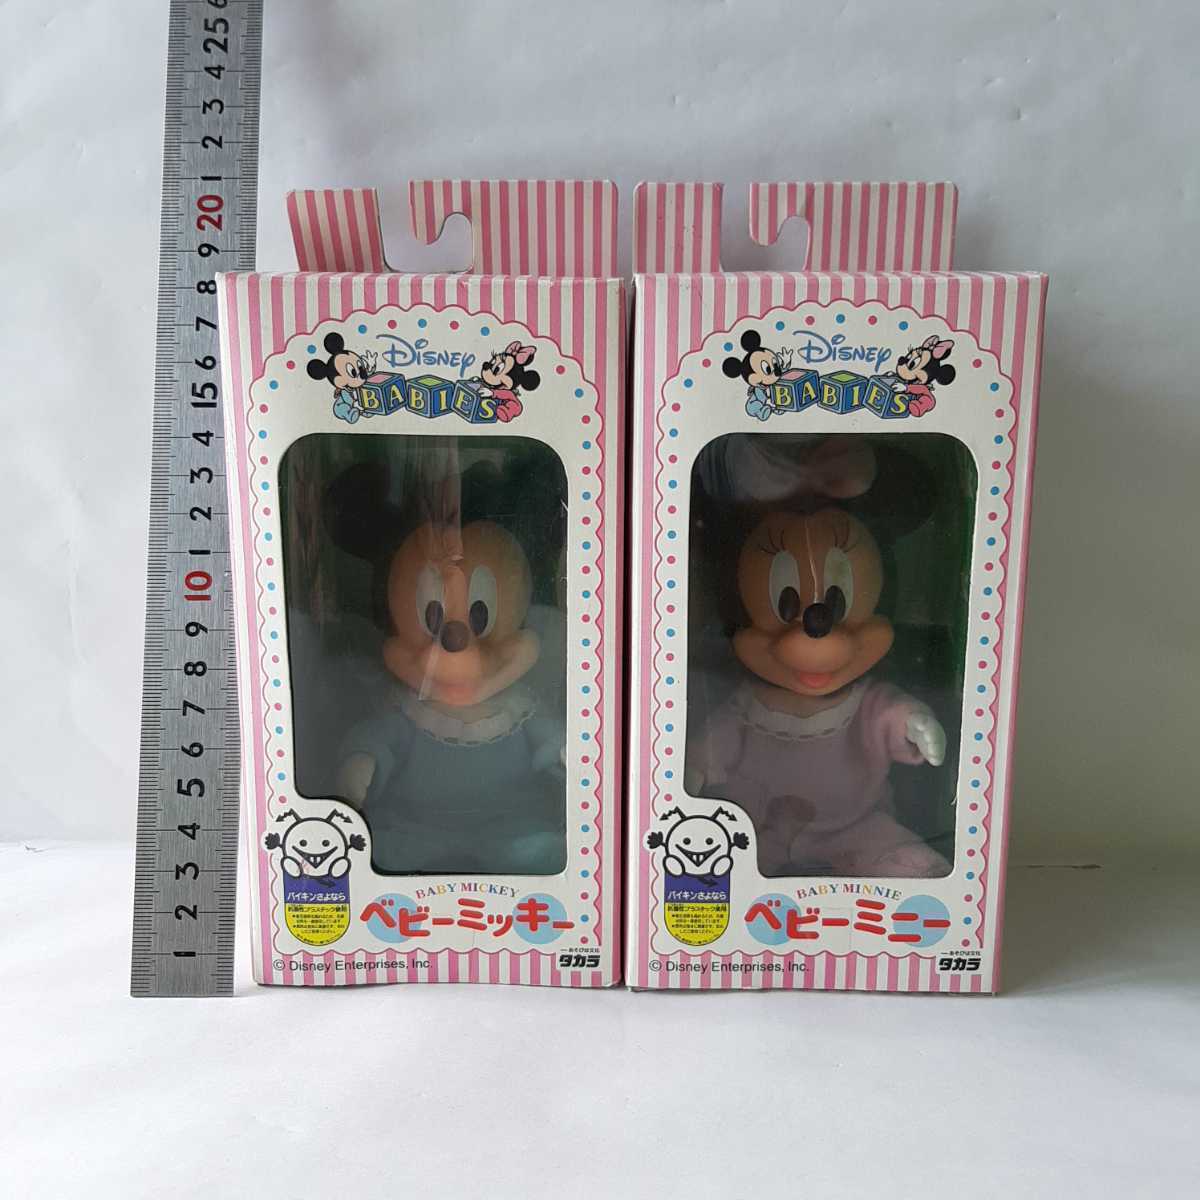 ベビーミッキー ミニー フィギュア レトロ タカラ フィギュア ミッキー ディズニー Disney JAPAN TOYS mickey baby ドール Japanese